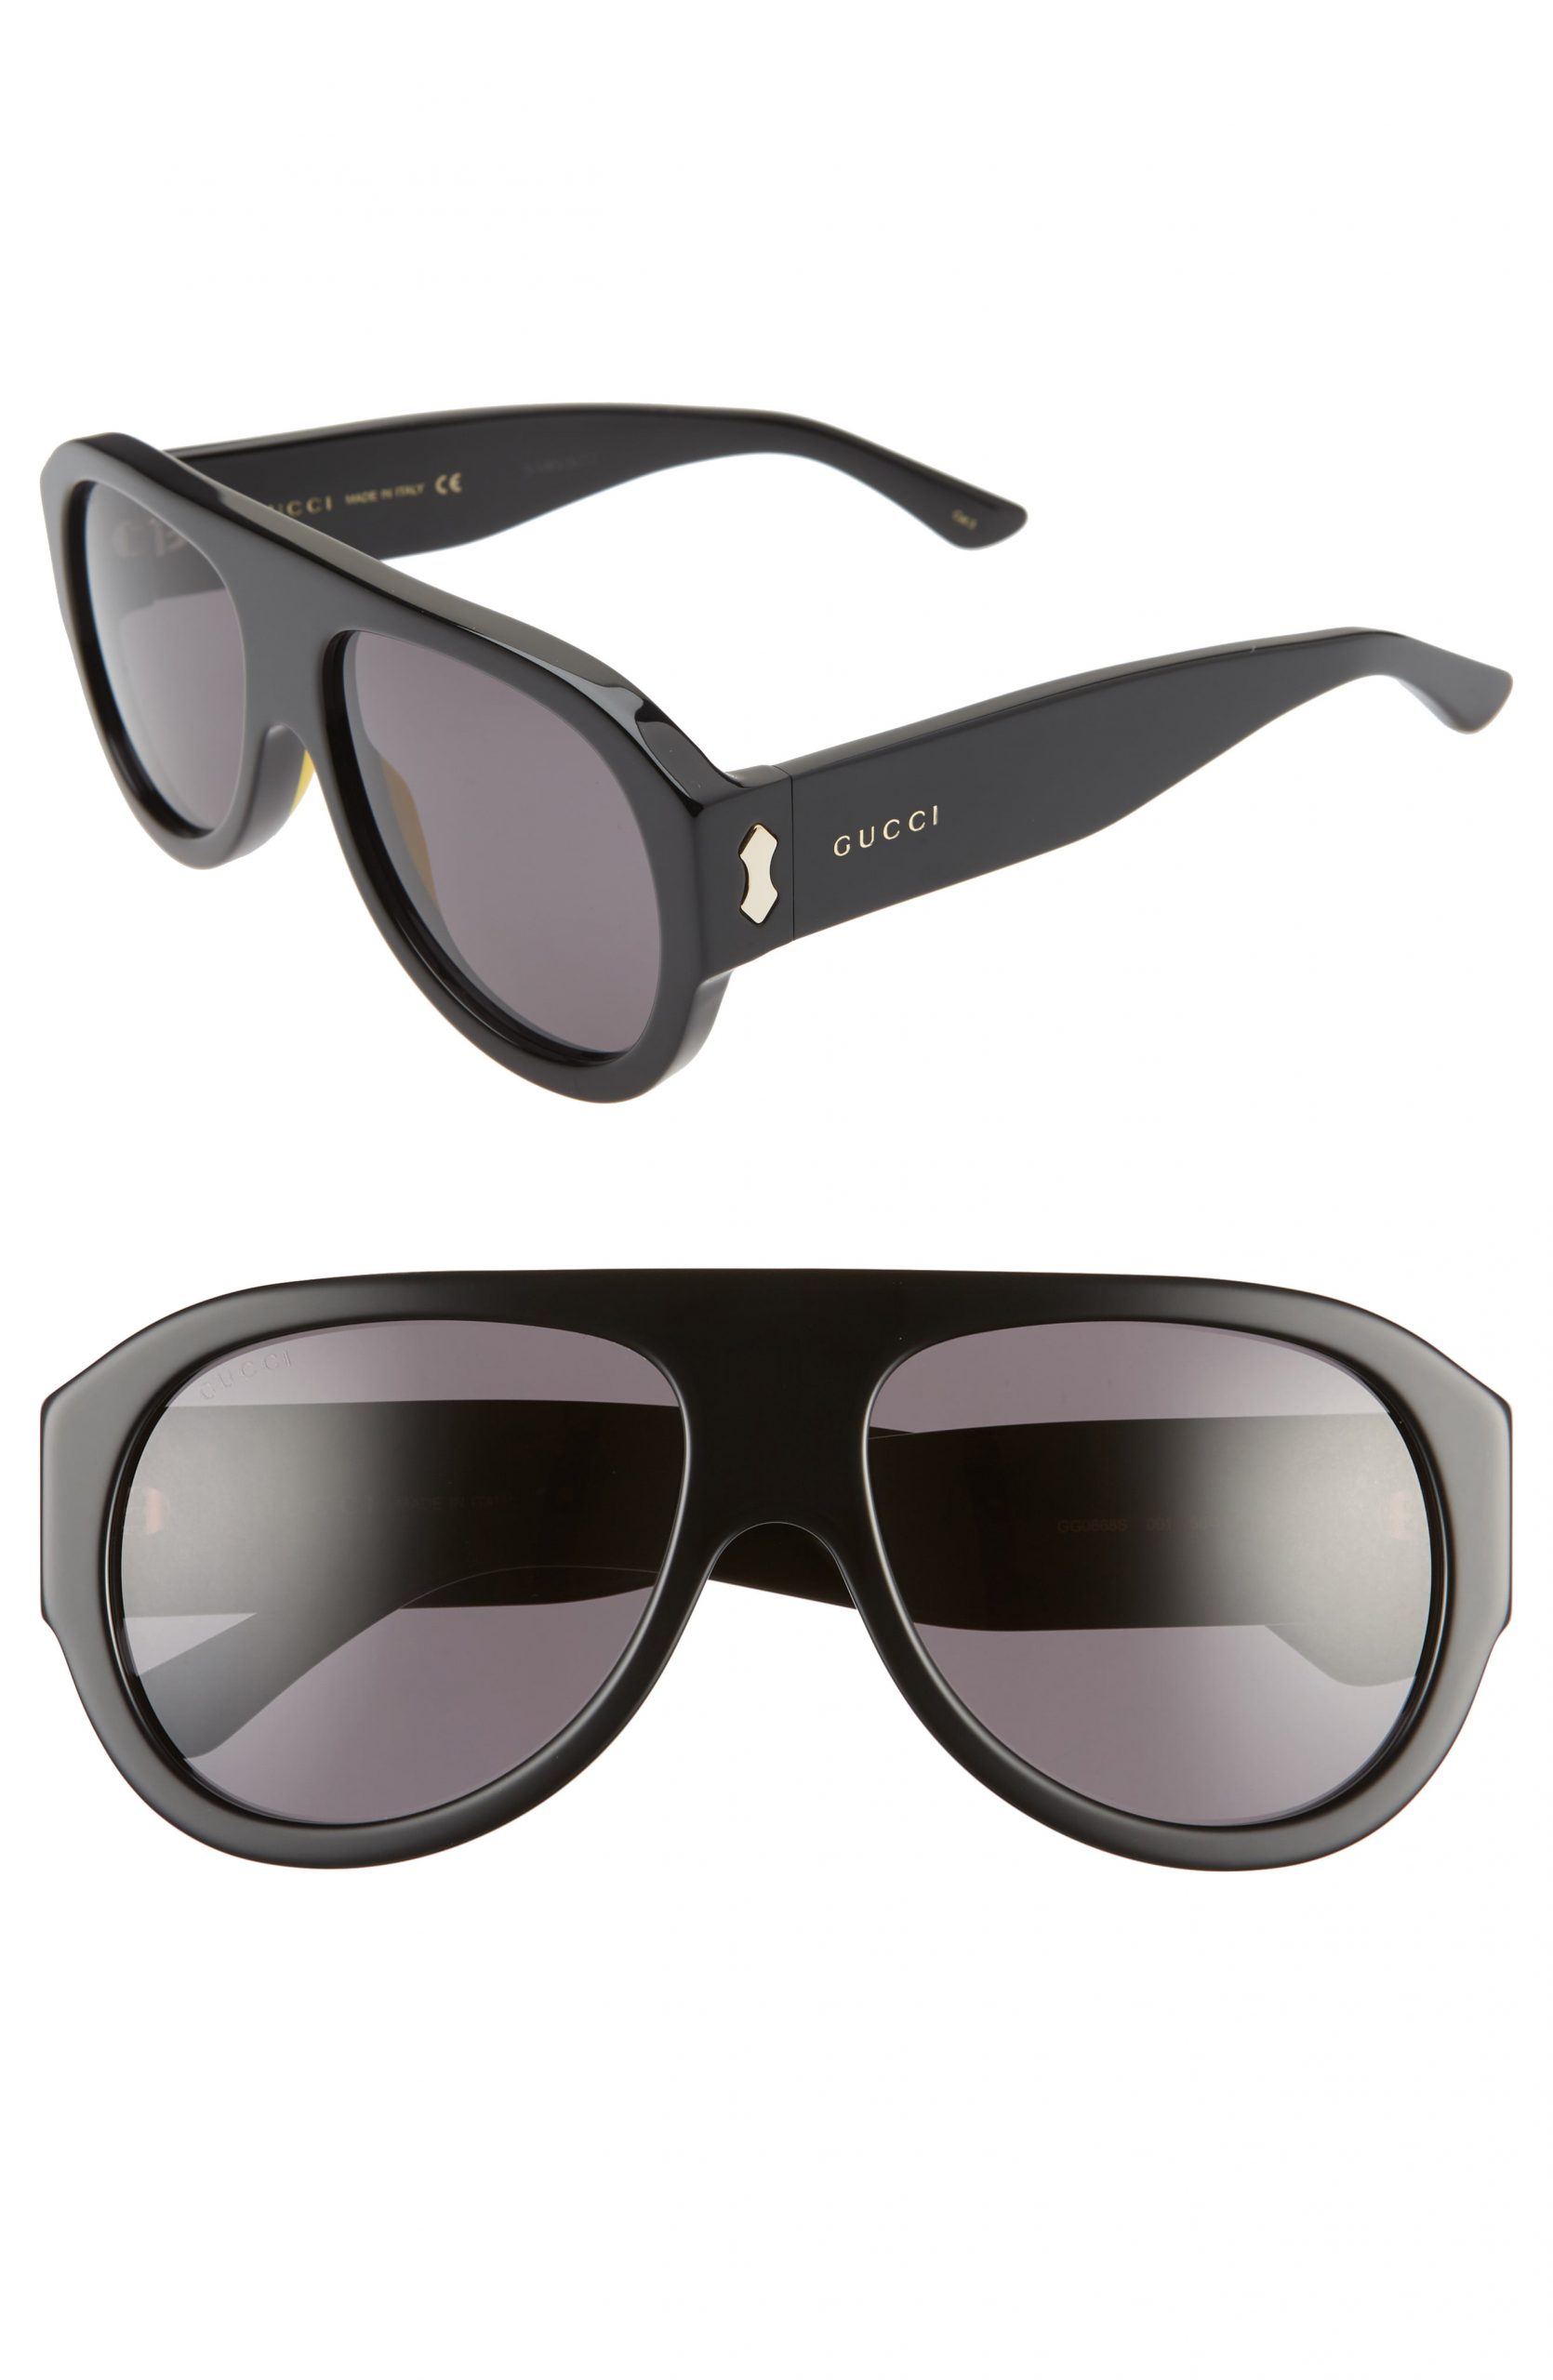 gucci men's oversized sunglasses